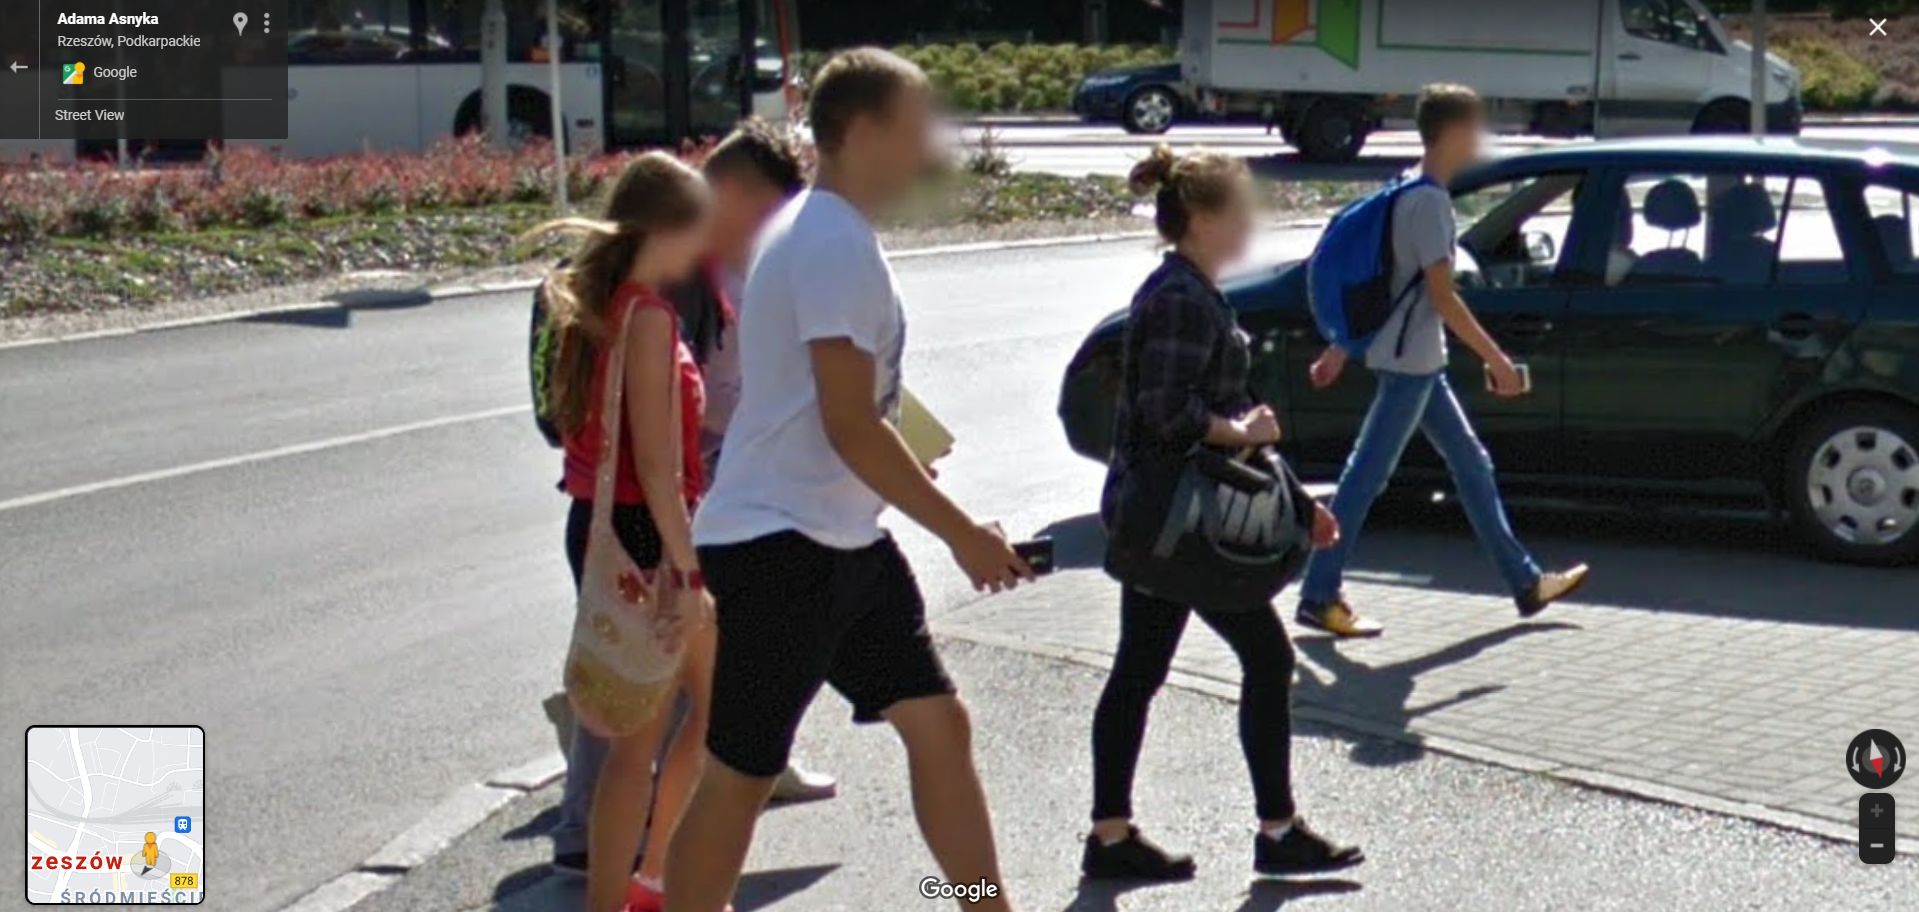 Uliczna moda mieszkańców Podkarpacia na fotografiach Google Street View [ZDJĘCIA] - Zdjęcie główne